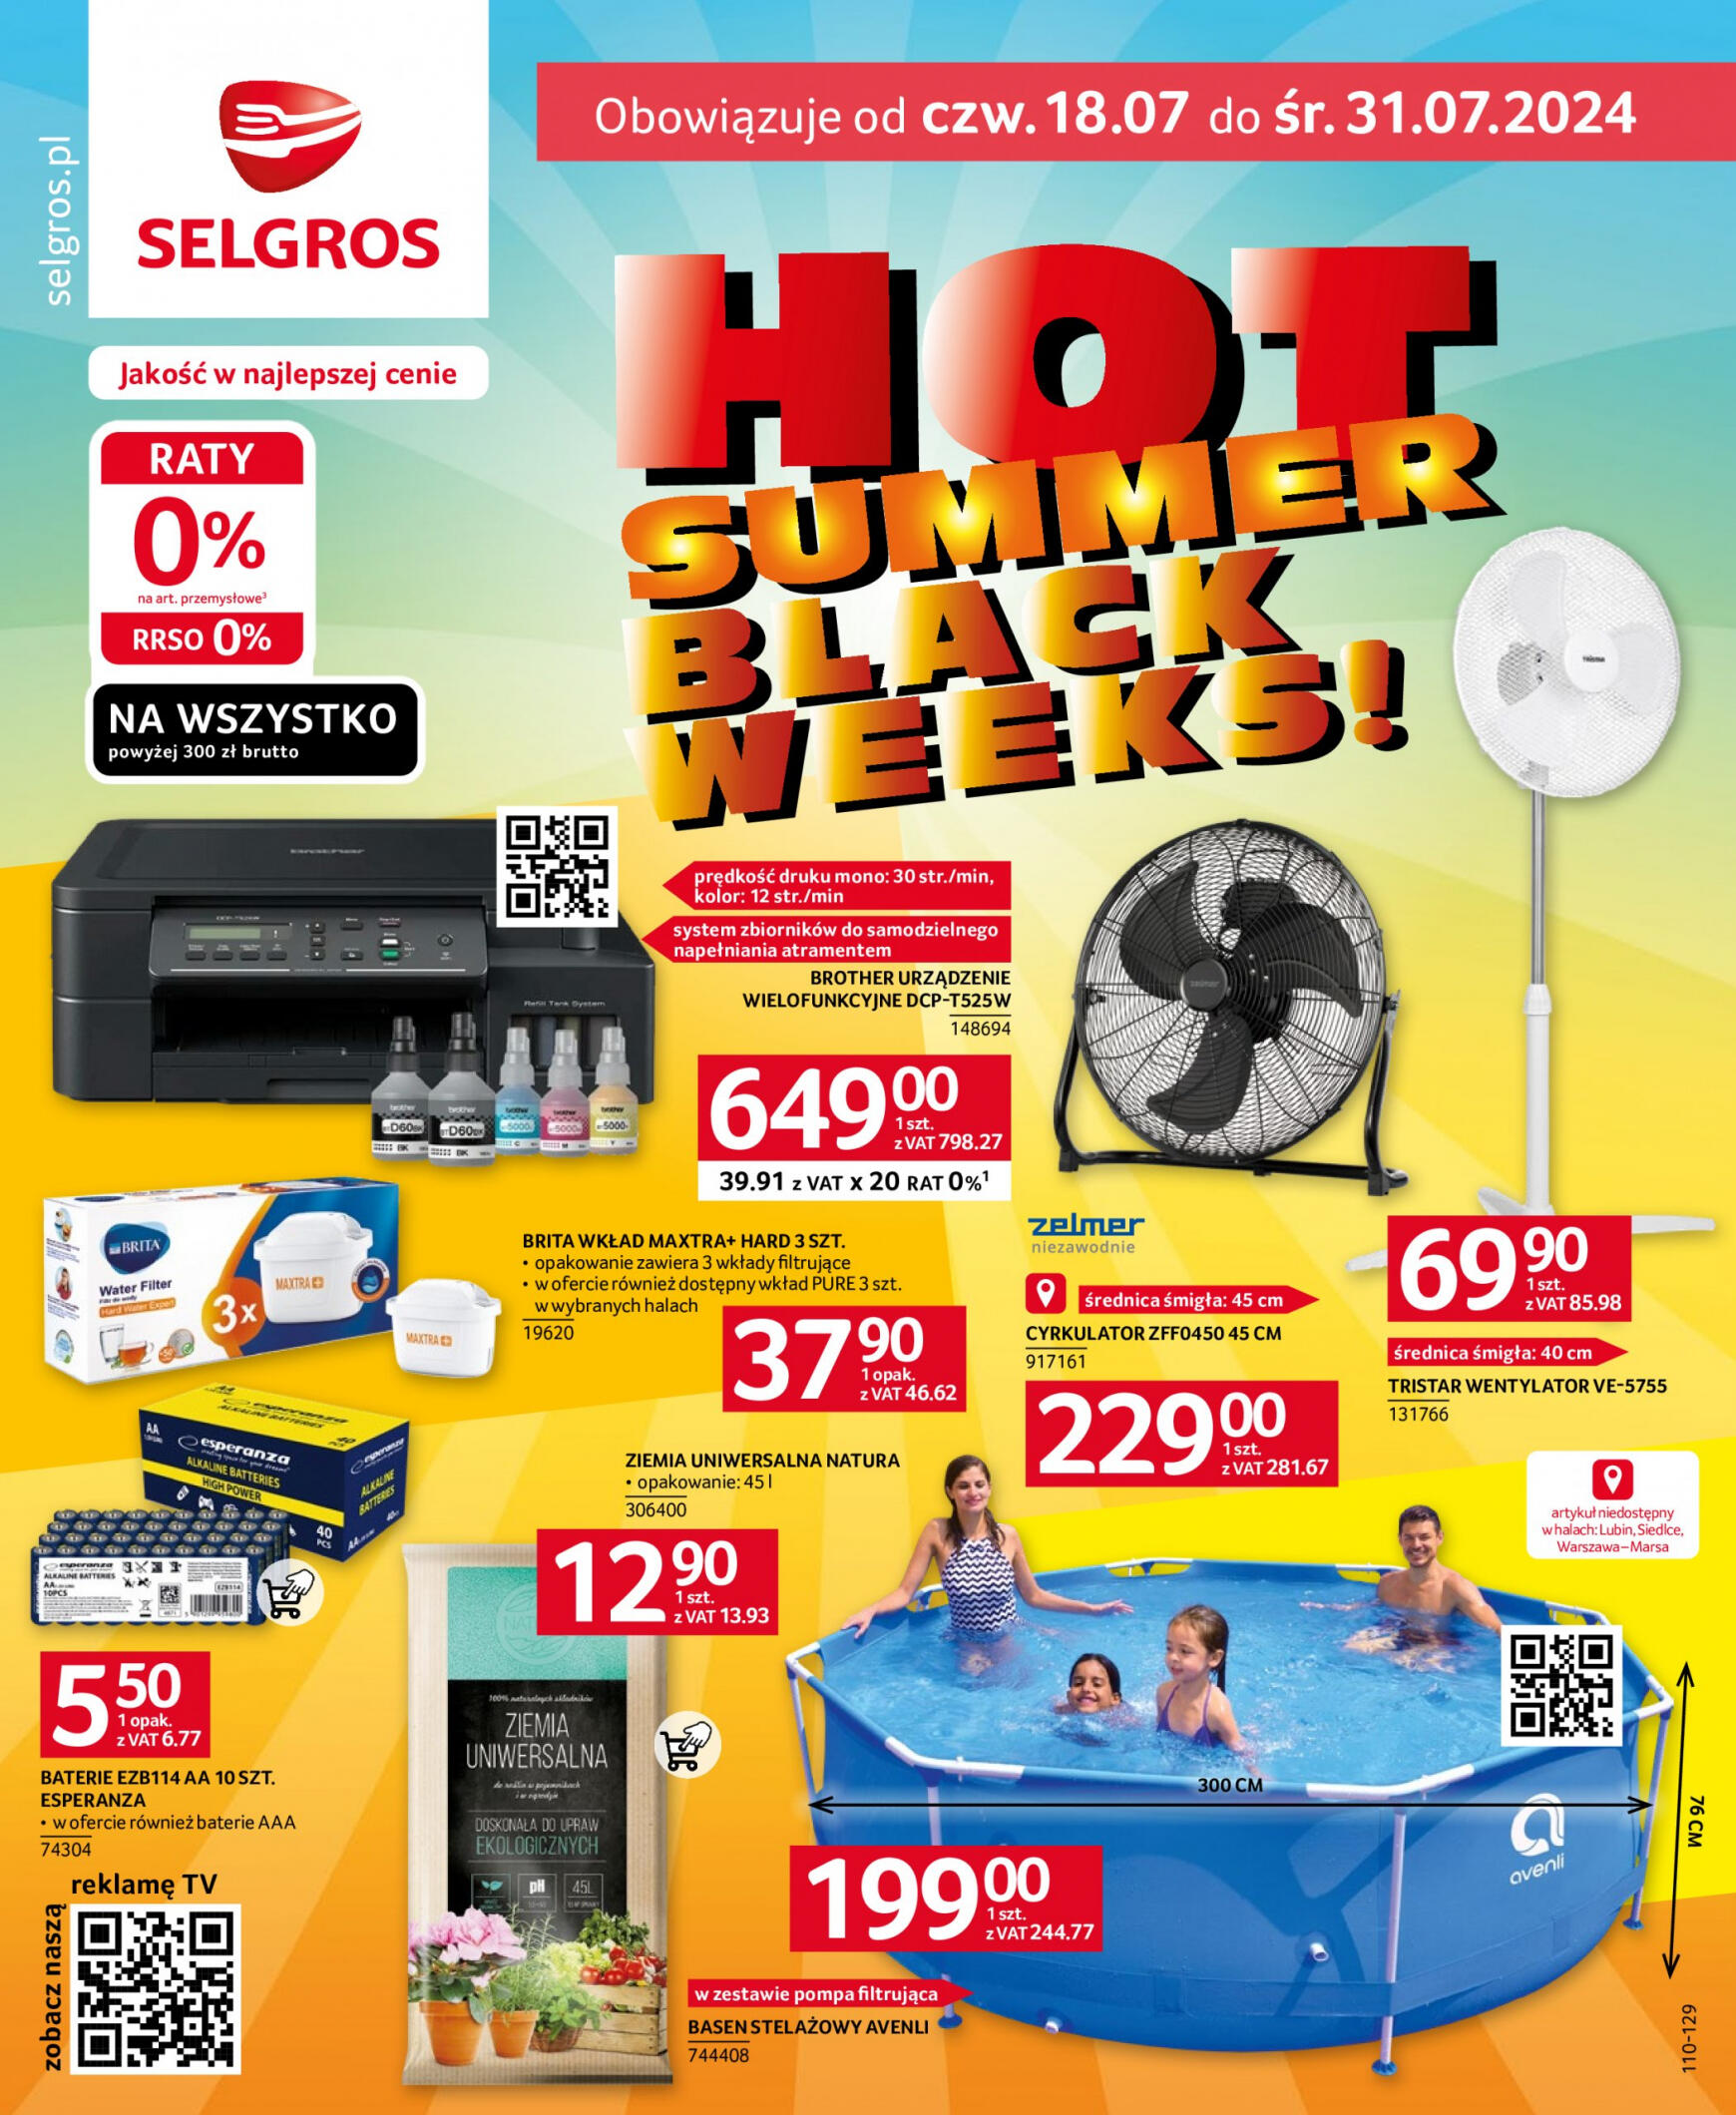 selgros - Selgros cash&carry - Hot Summer gazetka aktualna ważna od 18.07. - 31.07.